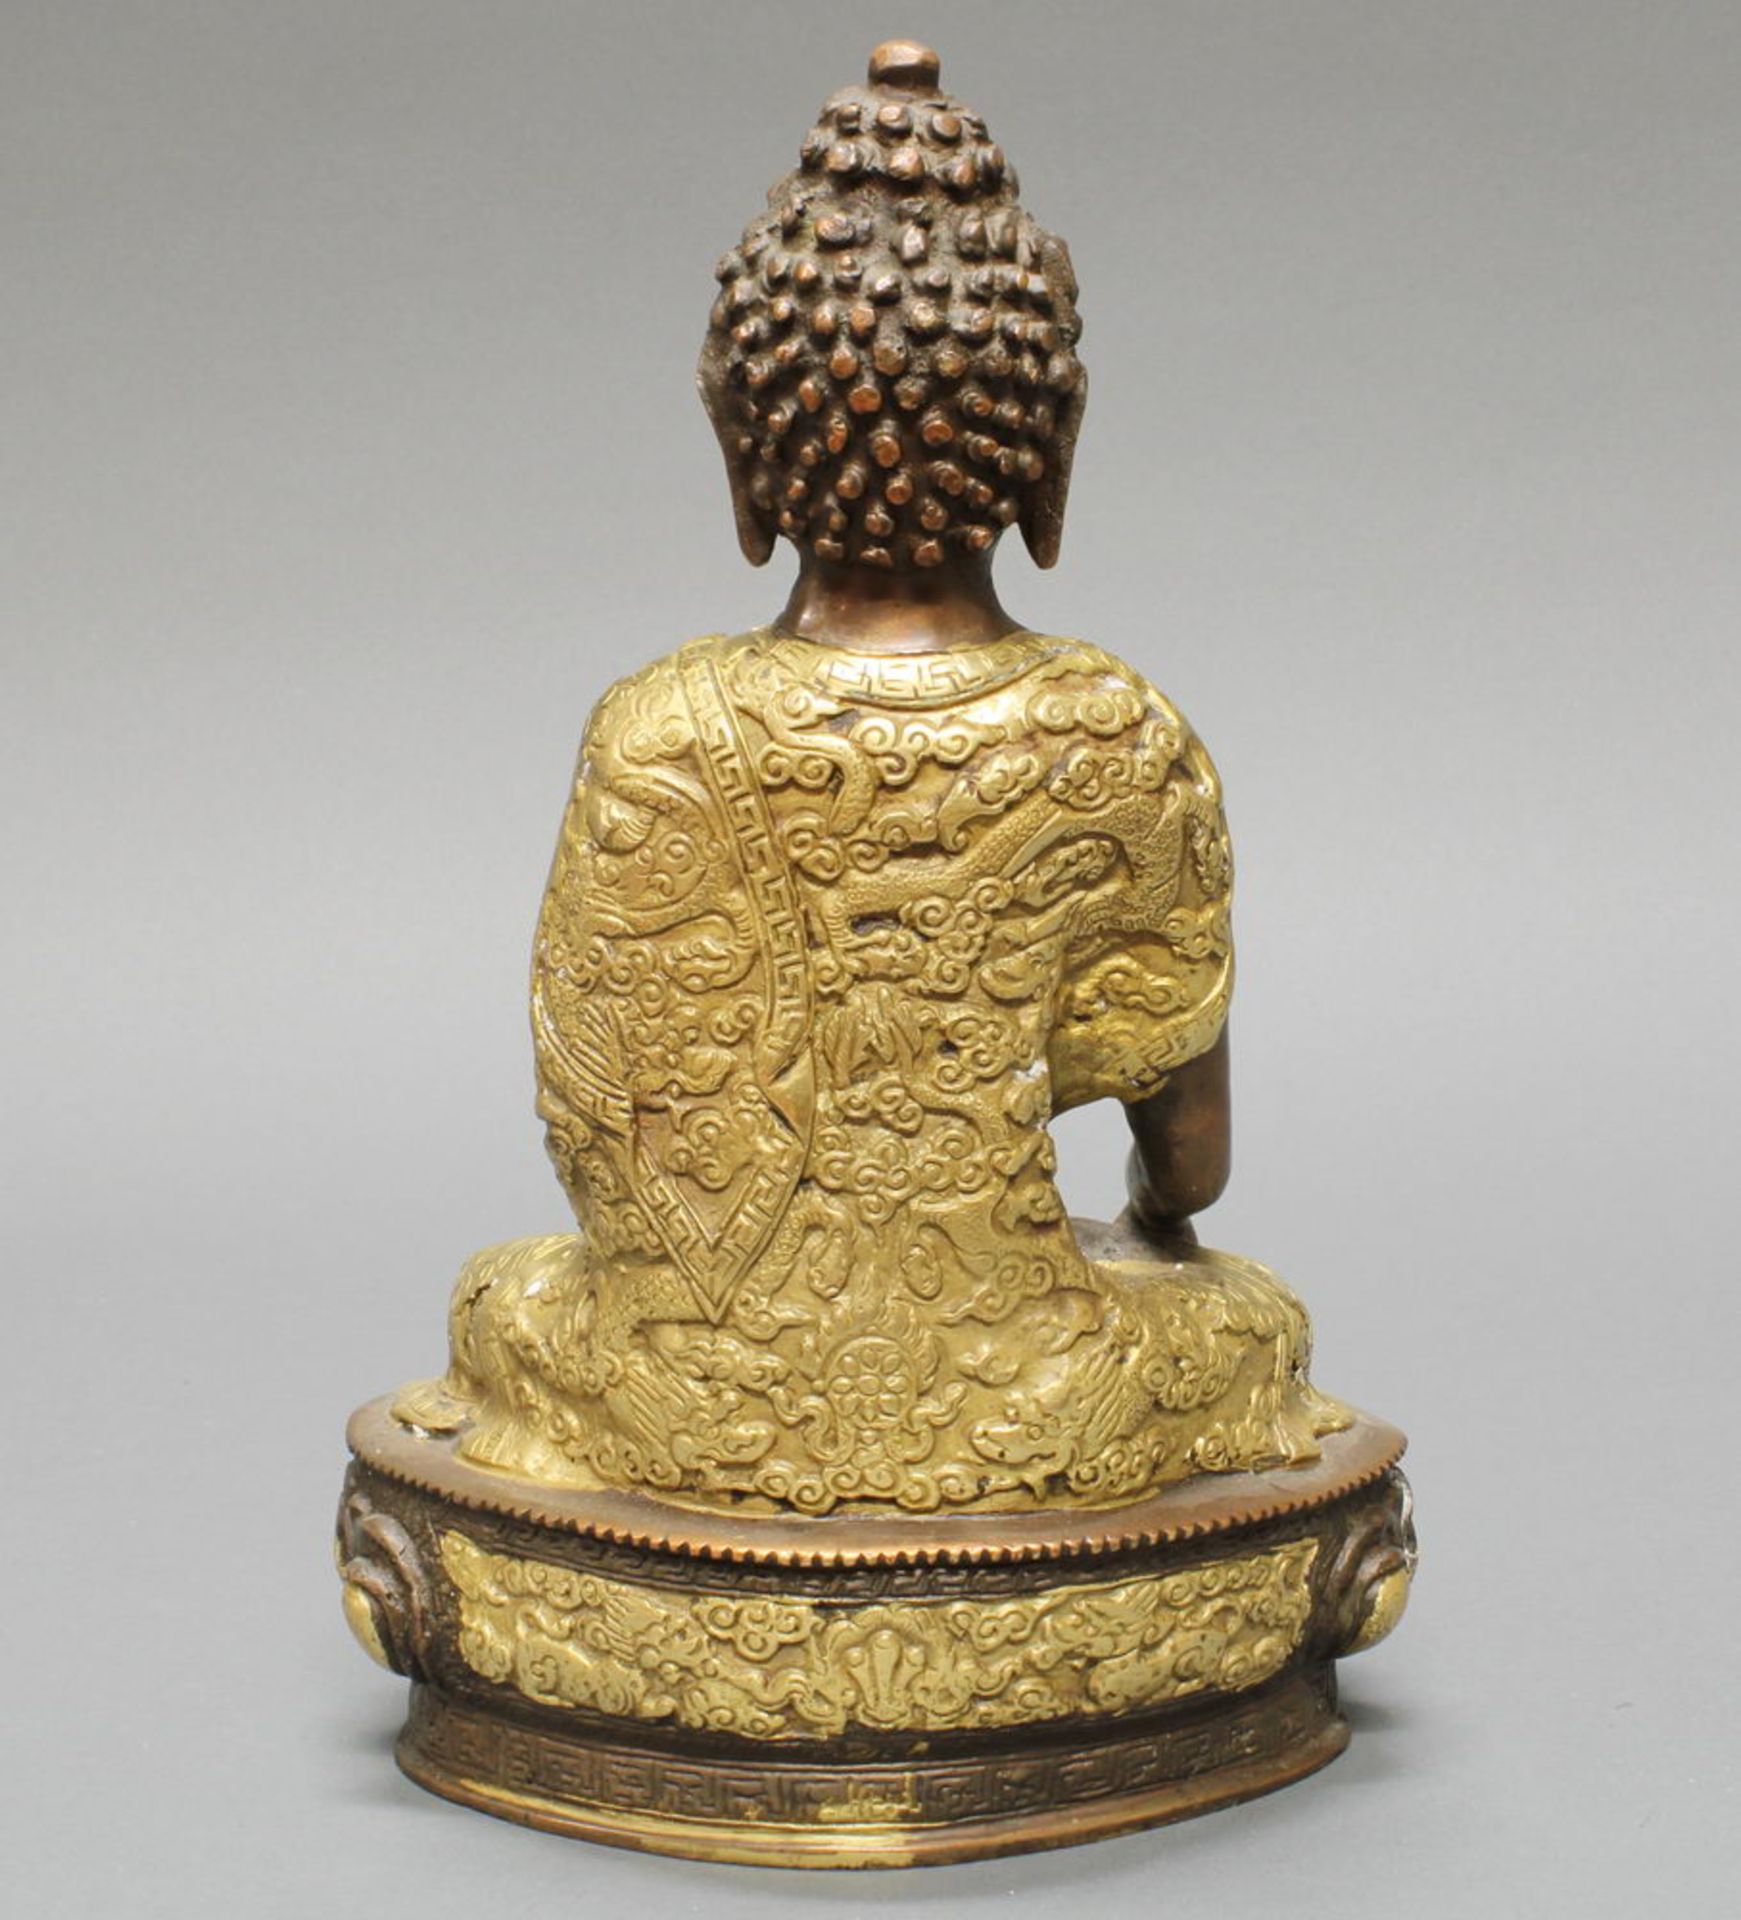 Sitzender Buddha, Nepal, 20. Jh., Messingbronze, teils vergoldet, die Hände in mudra, auf Lotossoc - Image 2 of 2